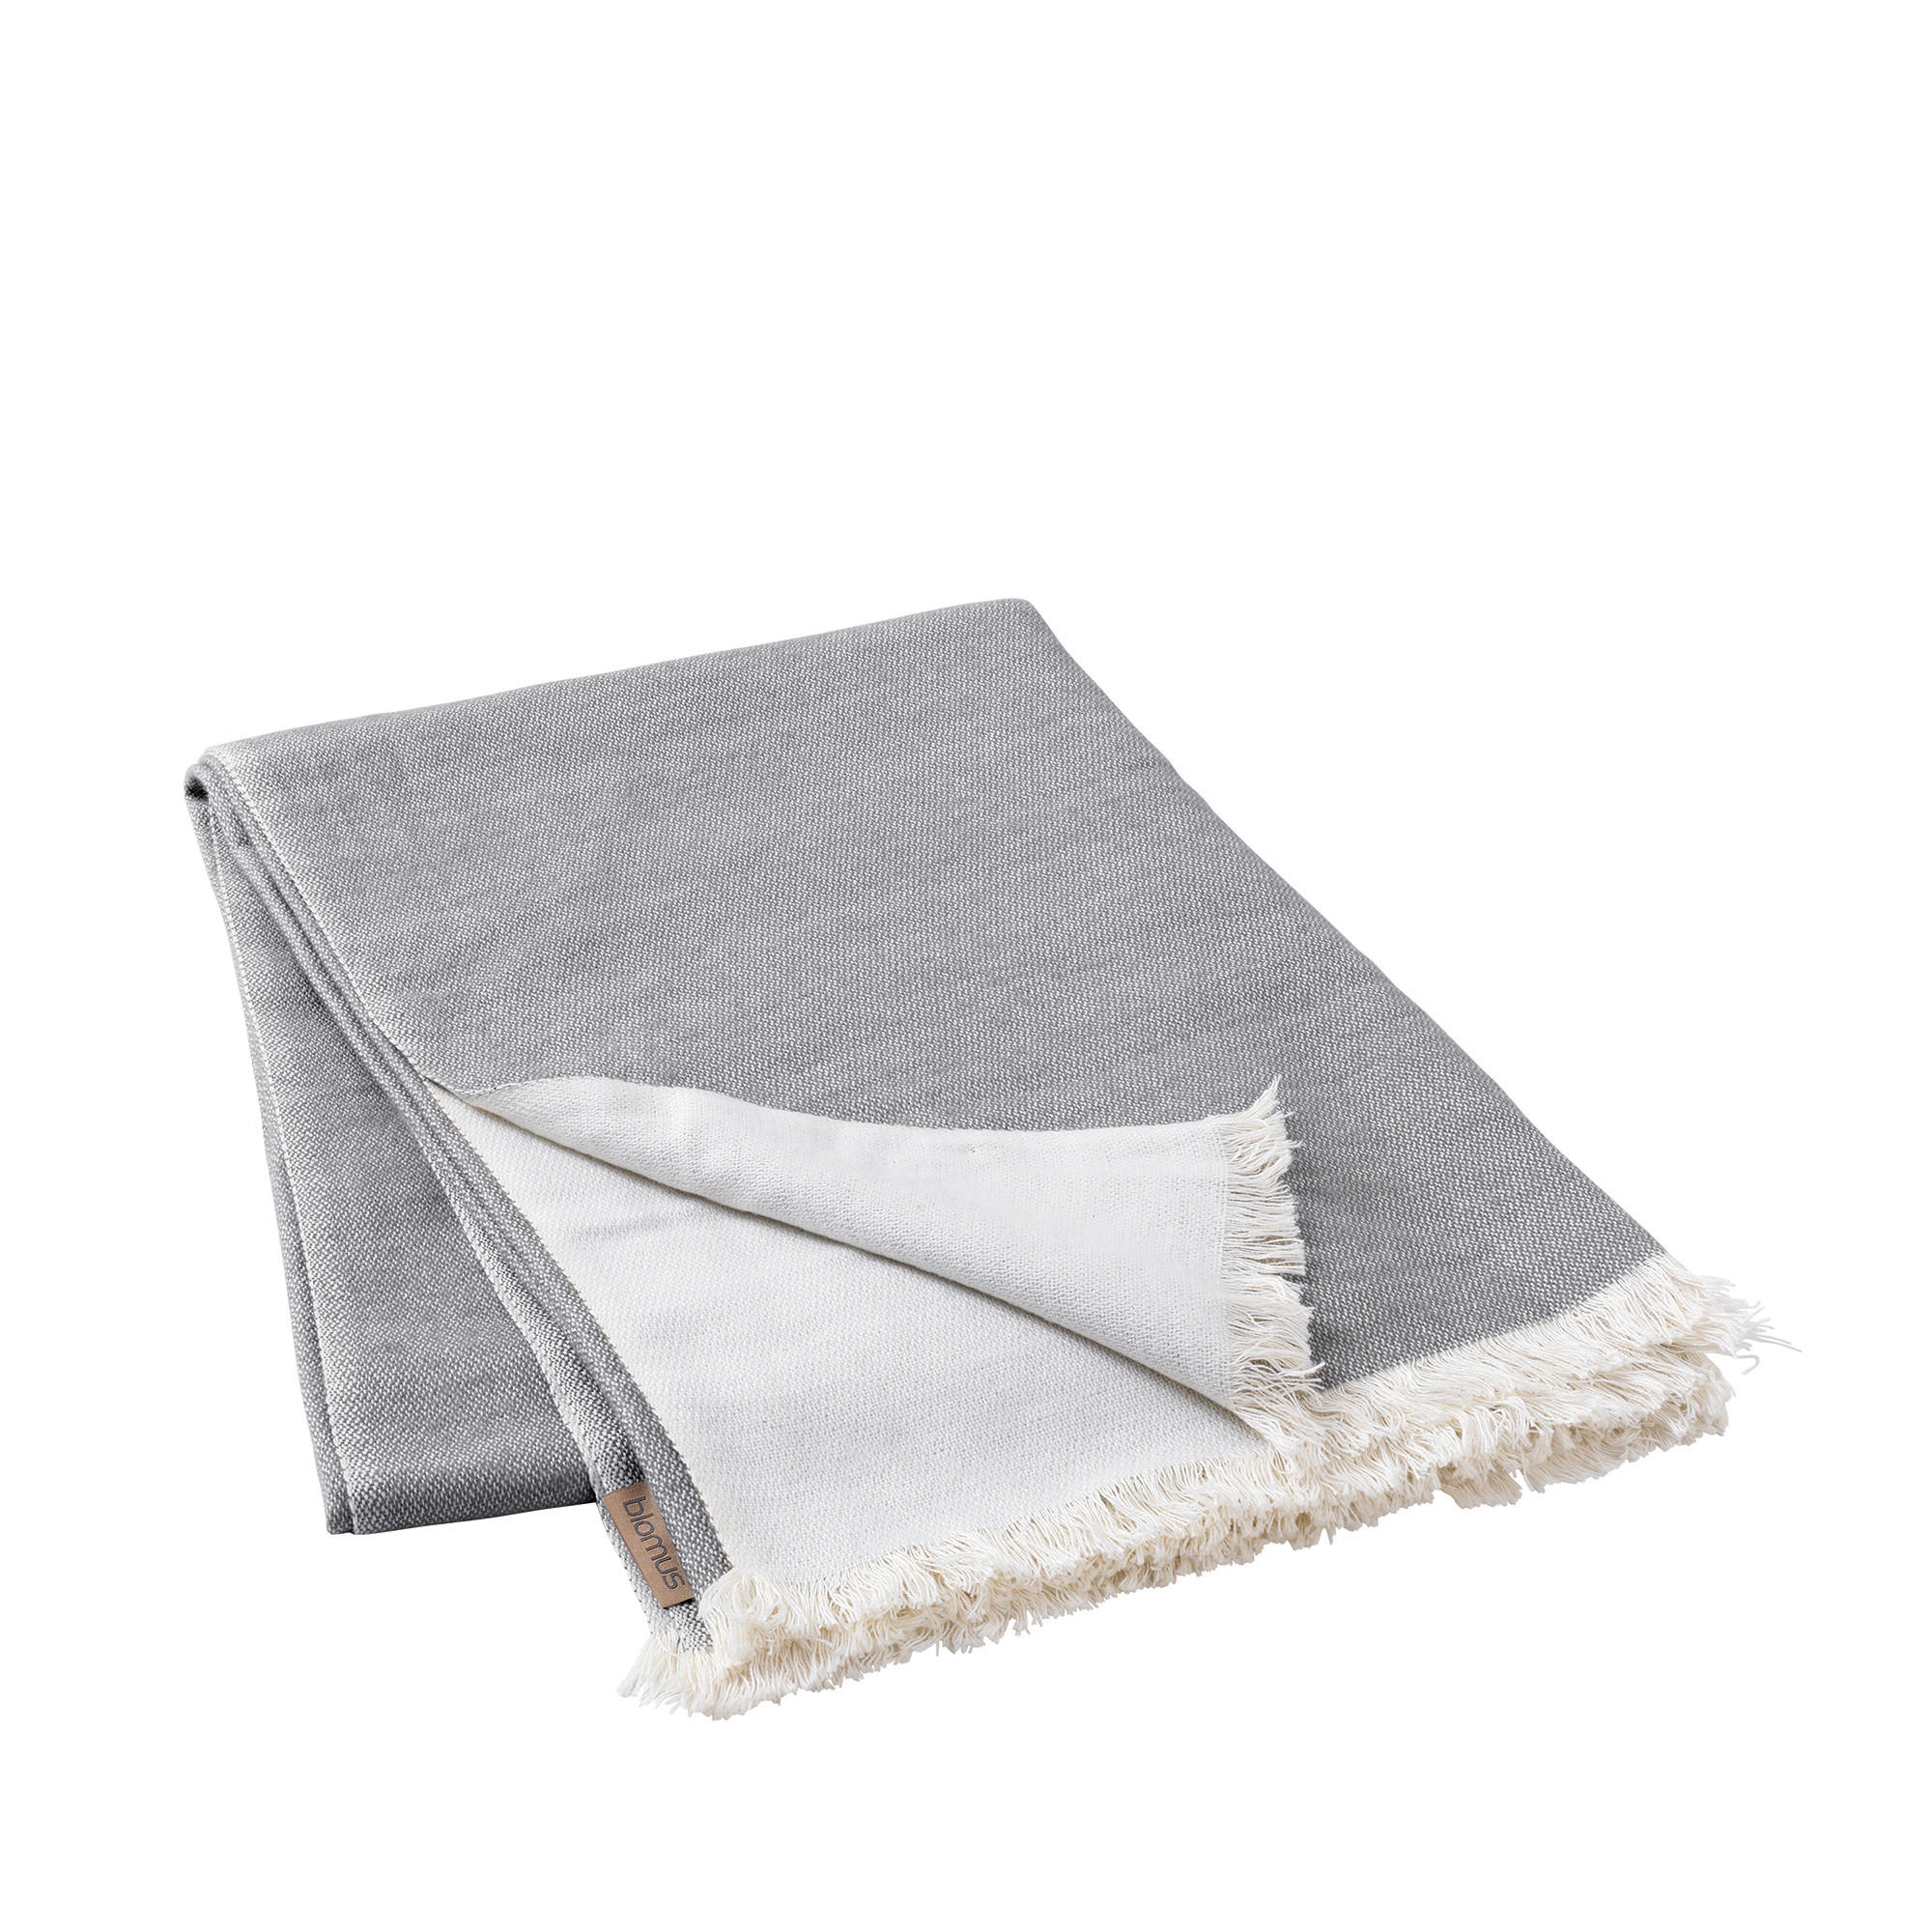 DECKE  - Grau, Design, Textil (130/180cm) - Blomus